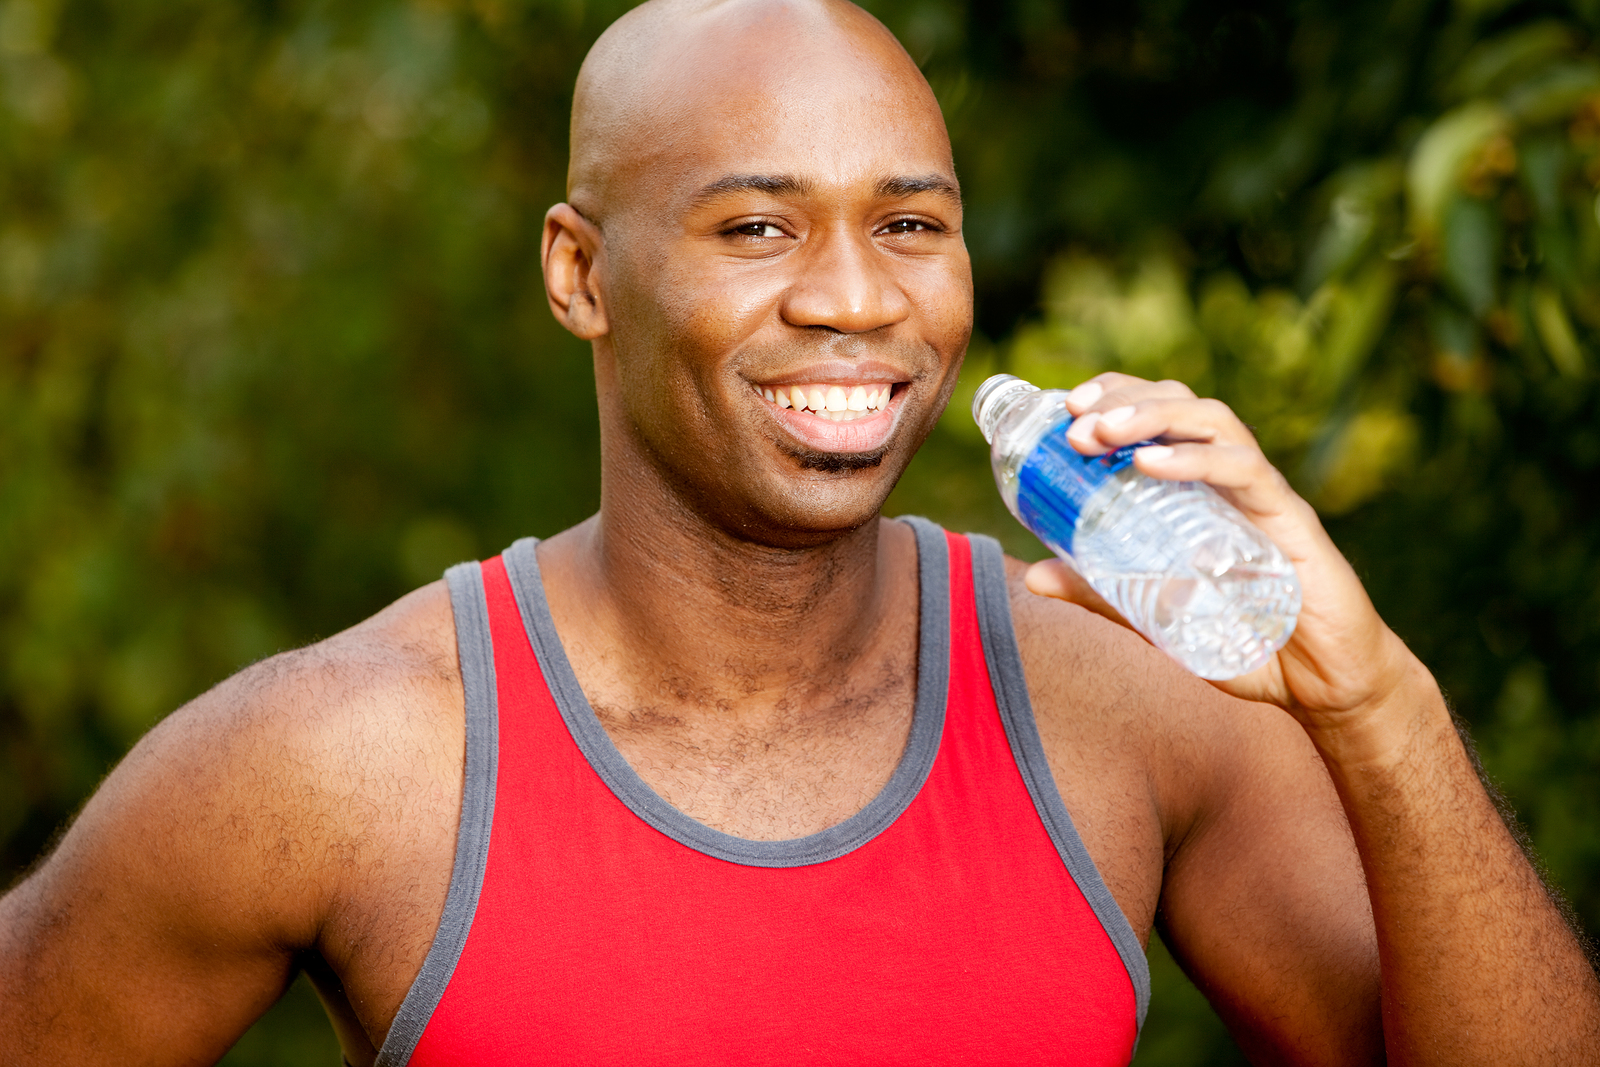 Fitness Water Bottle